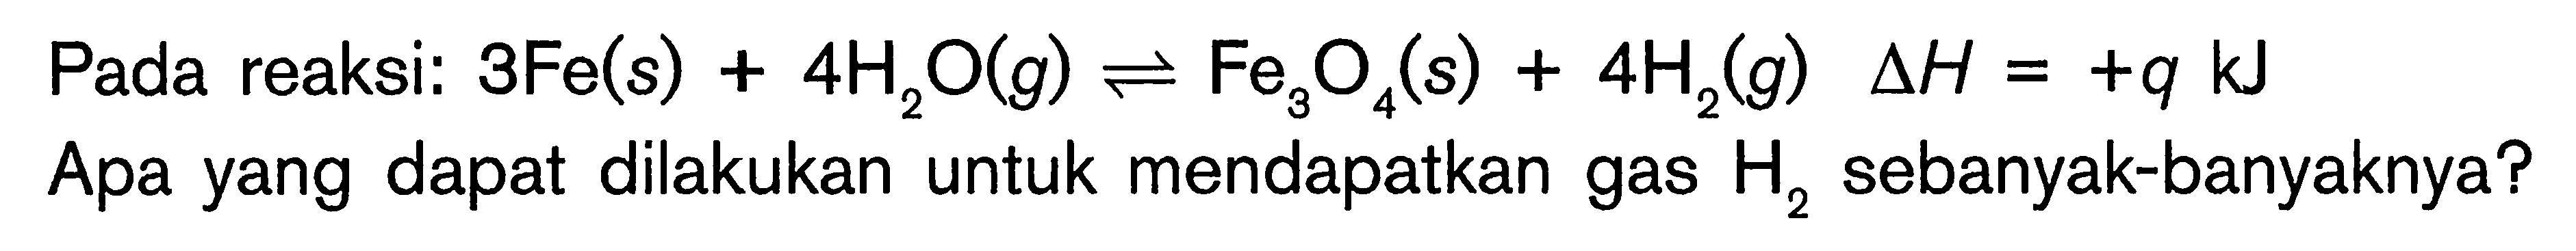 Pada reaksi: 3Fe(s) + 4H2O(g) <=> Fe3O4(s) + 4H2(g) deltaH = +q kJ Apa yang dapat dilakukan untuk mendapatkan gas H2 sebanyak-banyaknya?